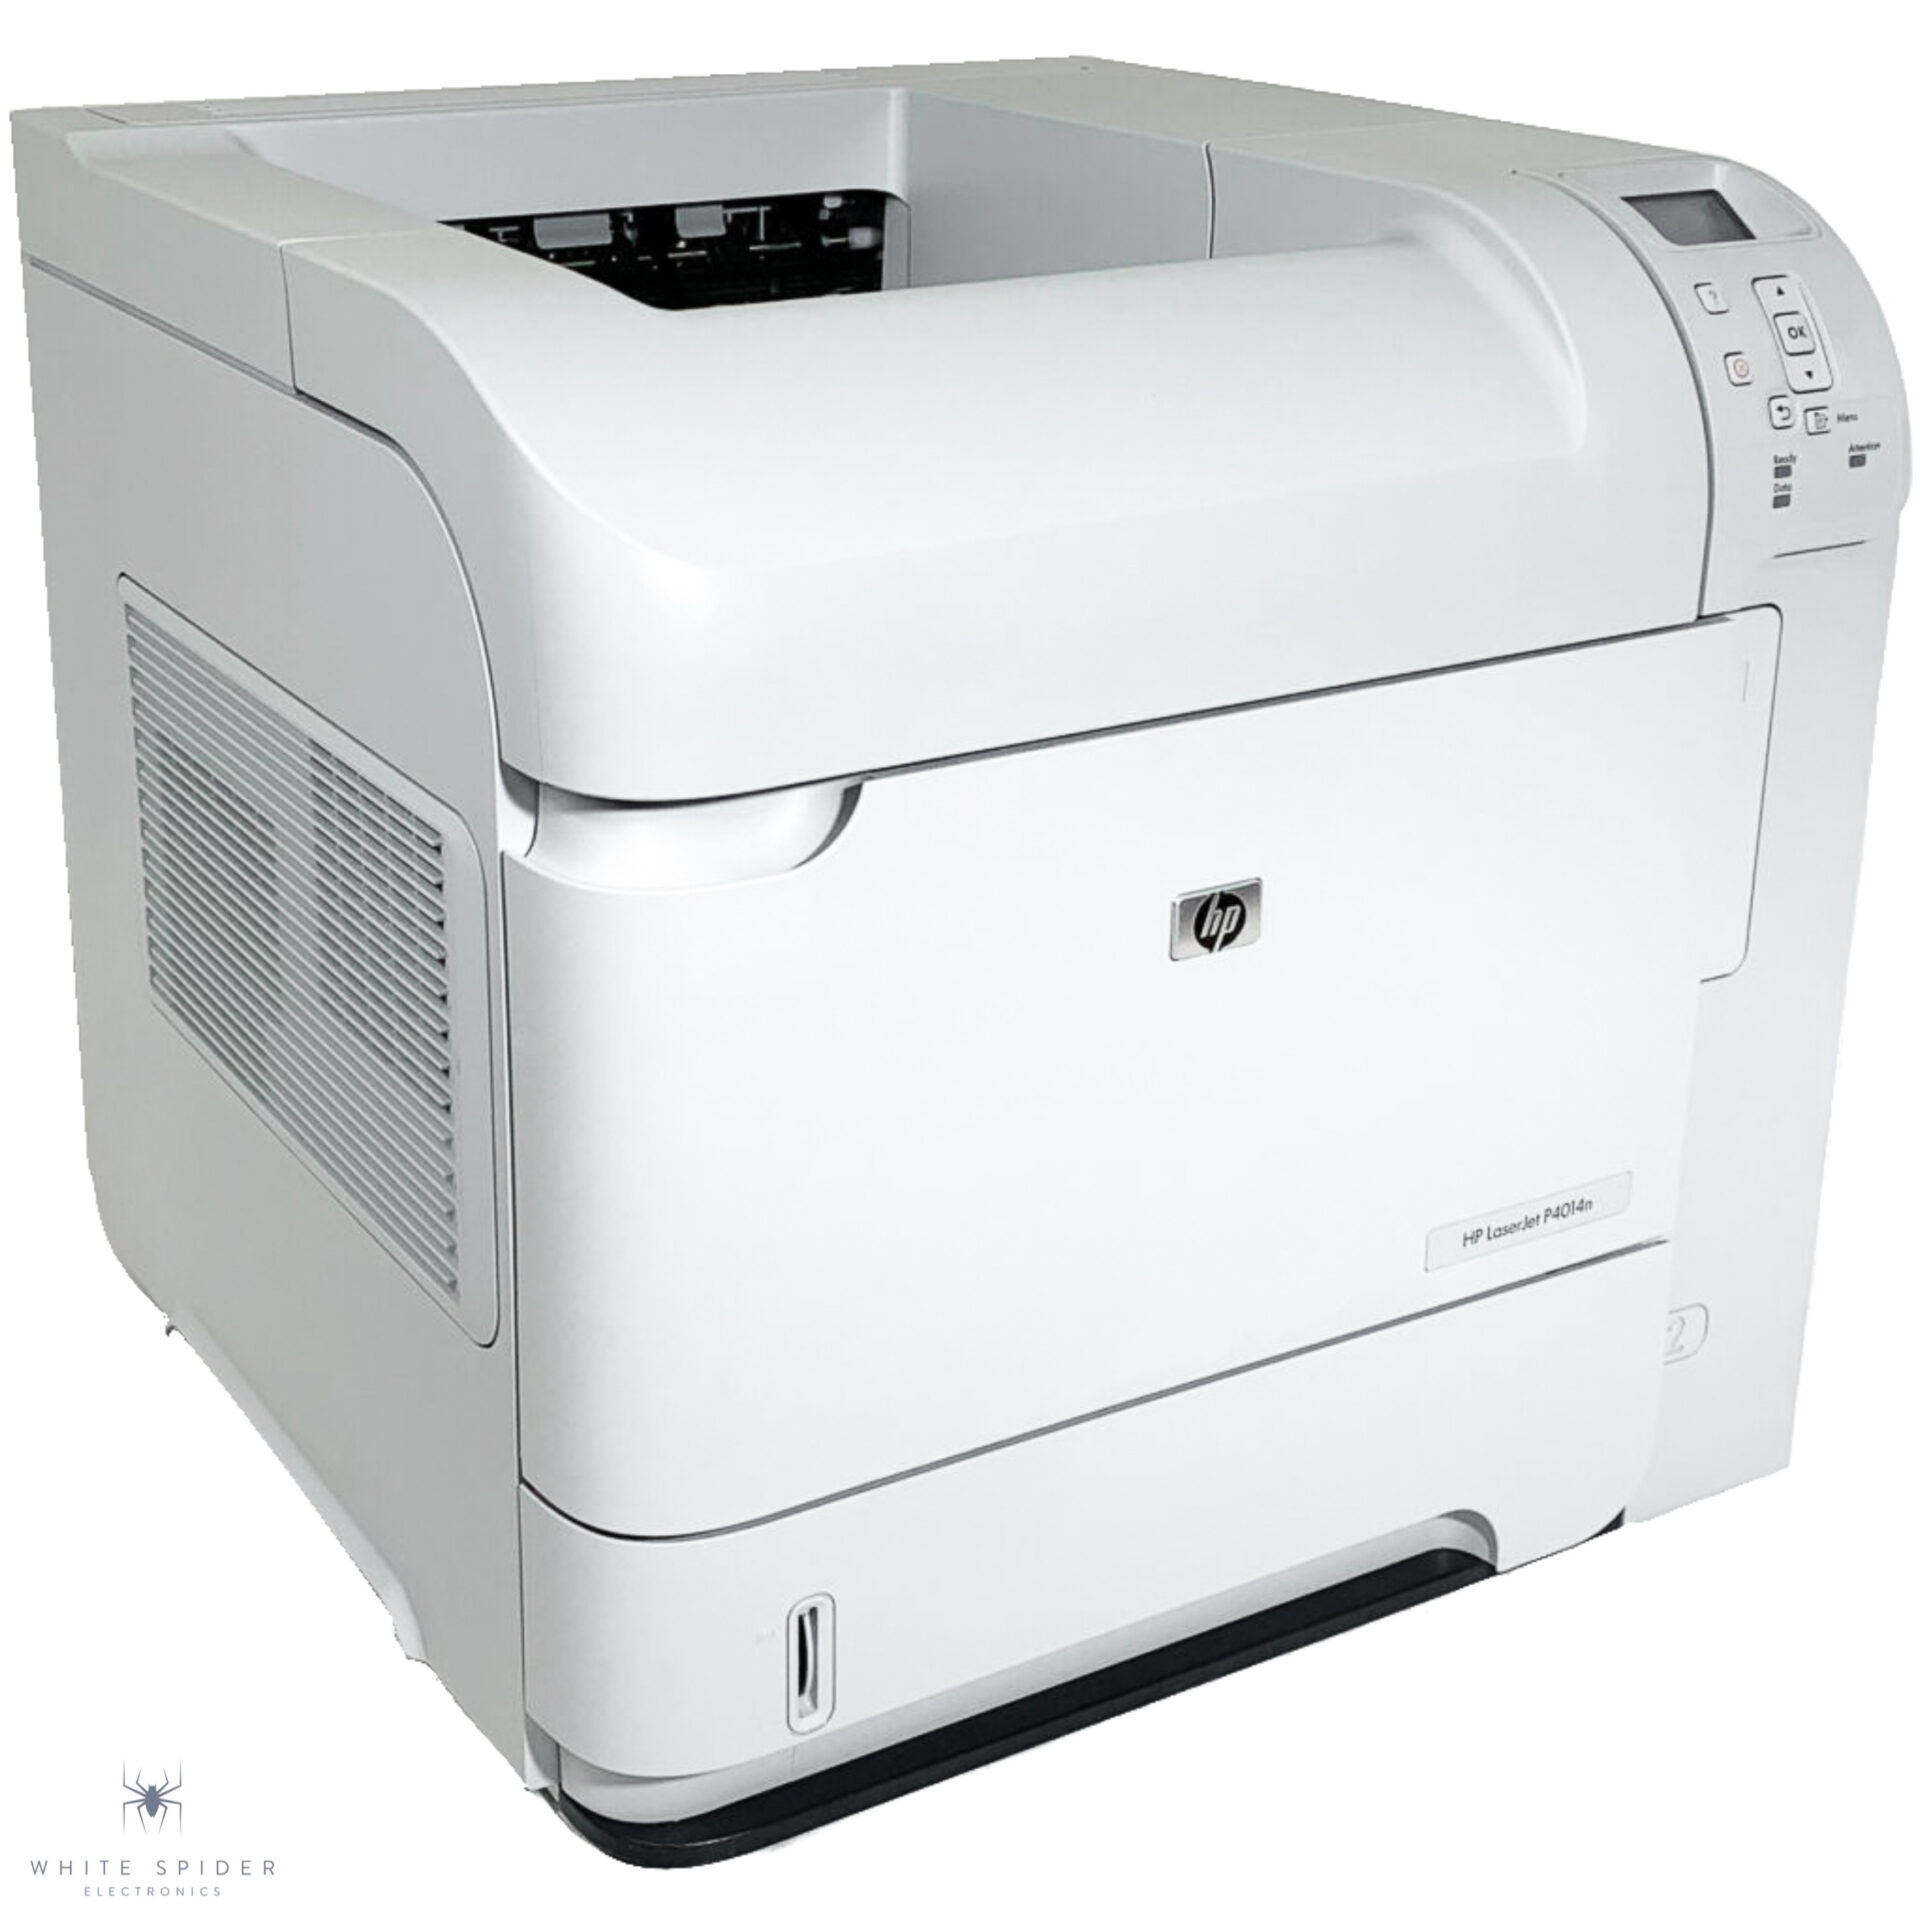 versneller Van toepassing vereist HP LaserJet P4014n Laser Network Printer CB507A - White Spider Electronics